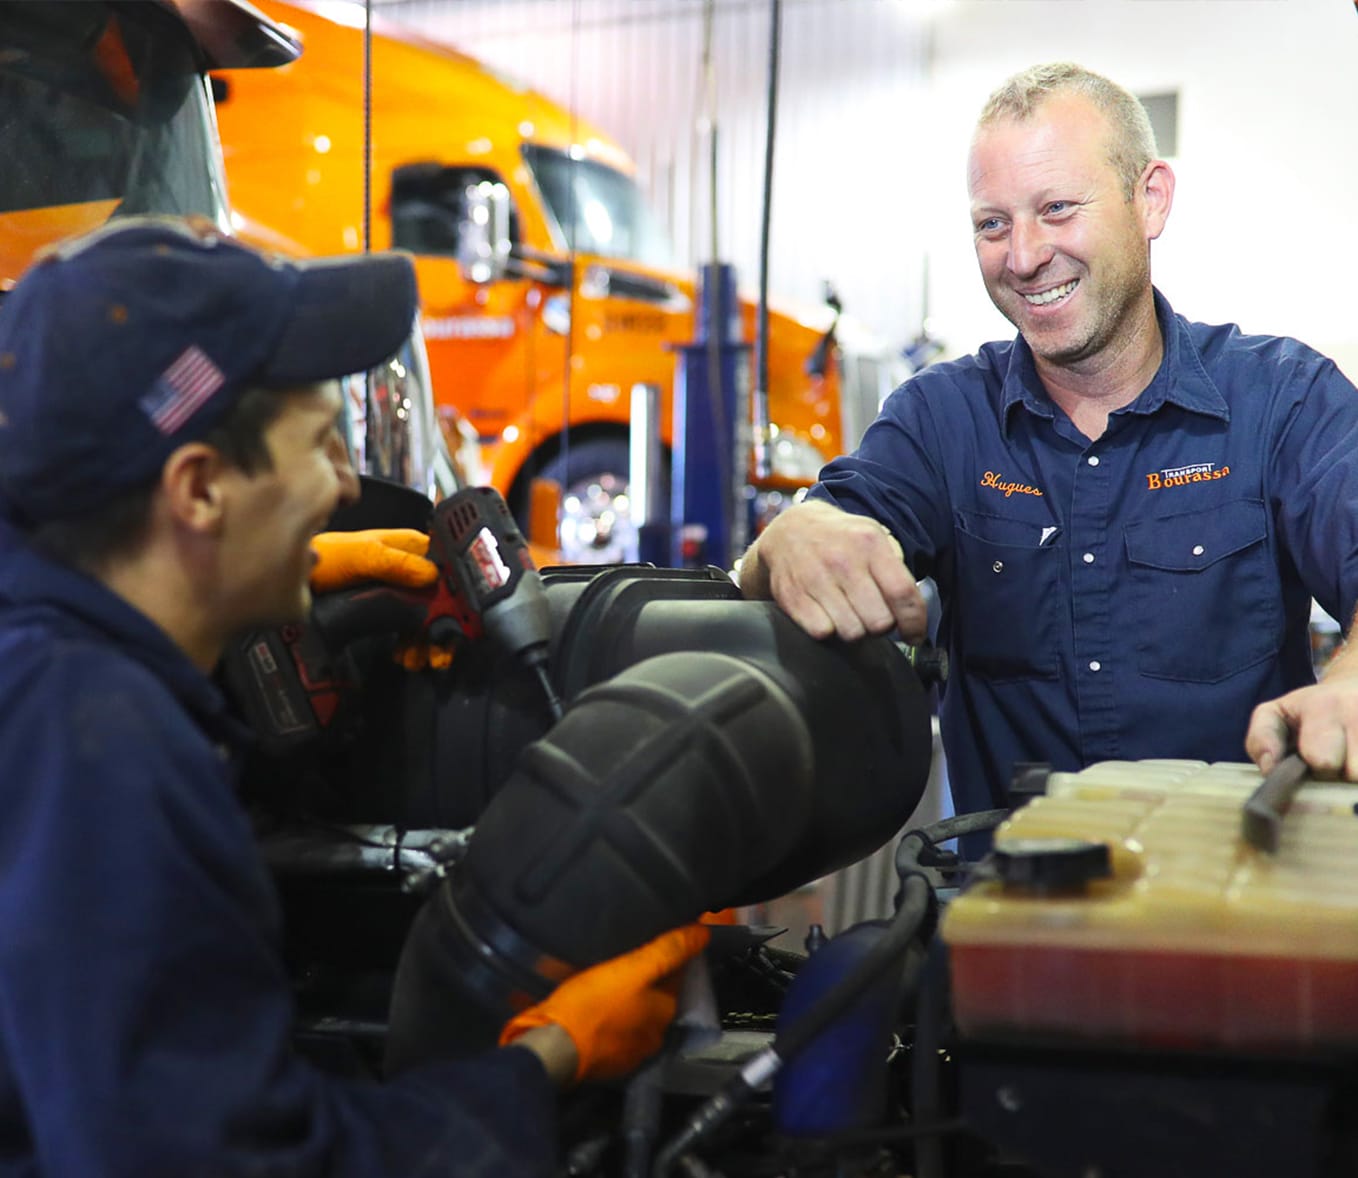 Un mécanicien souriant en uniforme dans un garage, entouré de cabines de camions Transport Bourassa et d'équipement de maintenance de flotte.